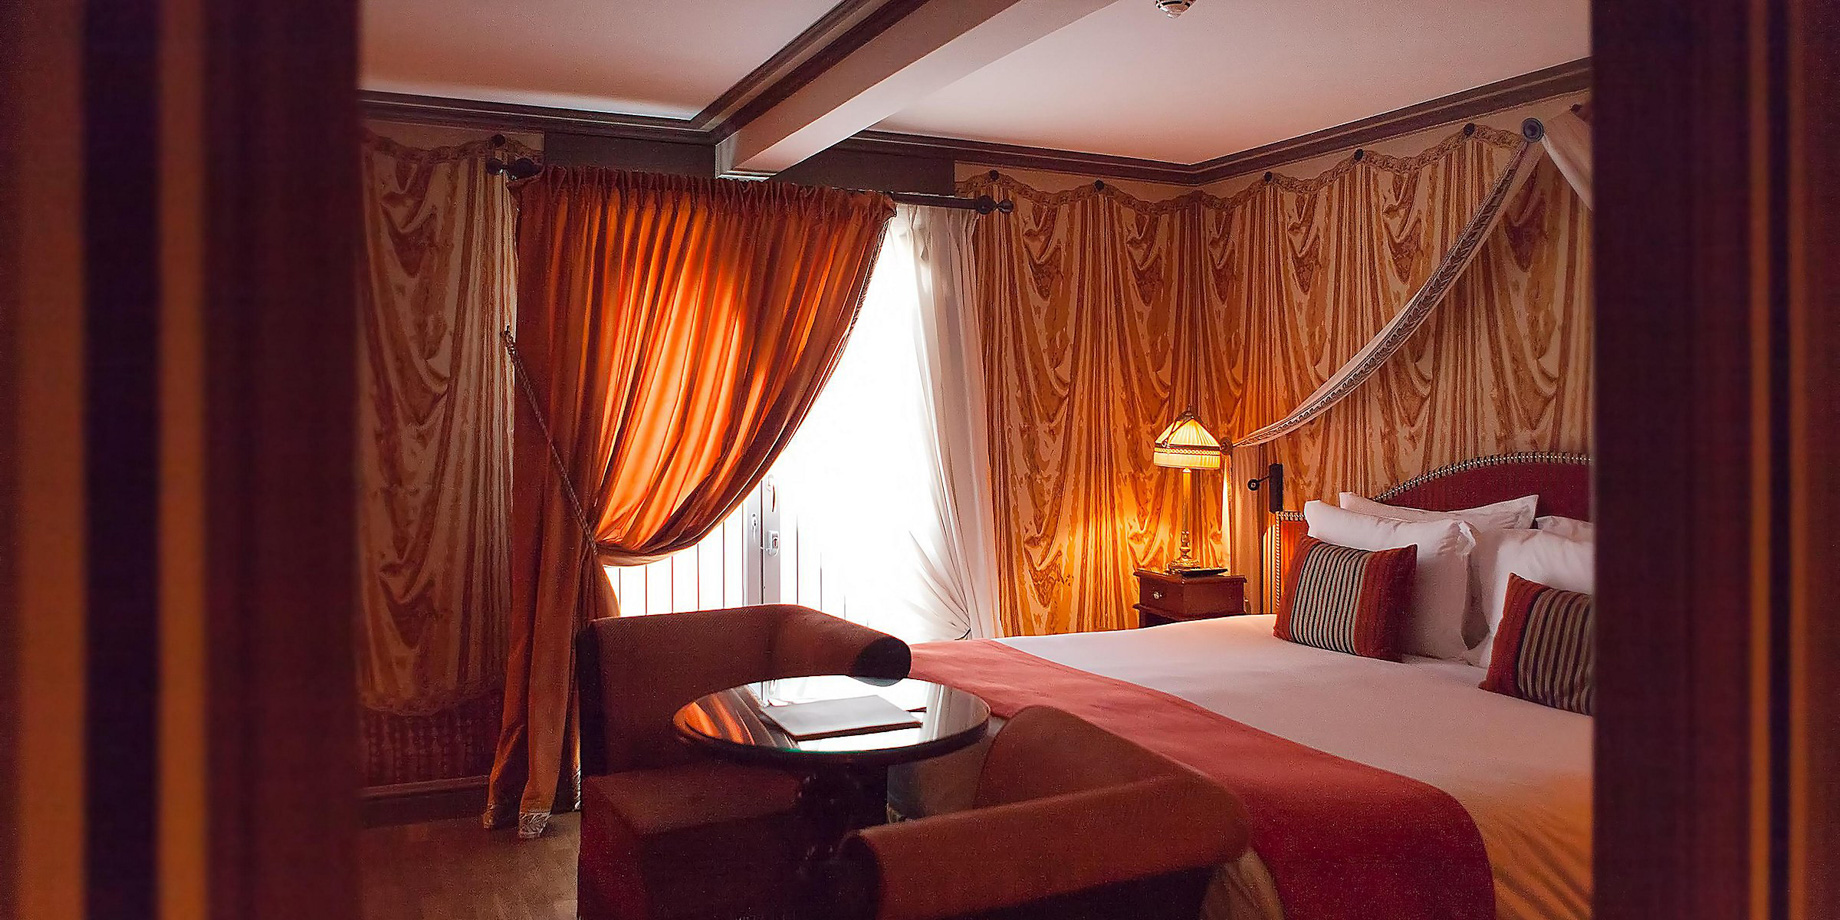 InterContinental Bordeaux Le Grand Hotel – Bordeaux, France – Exclusive Suite